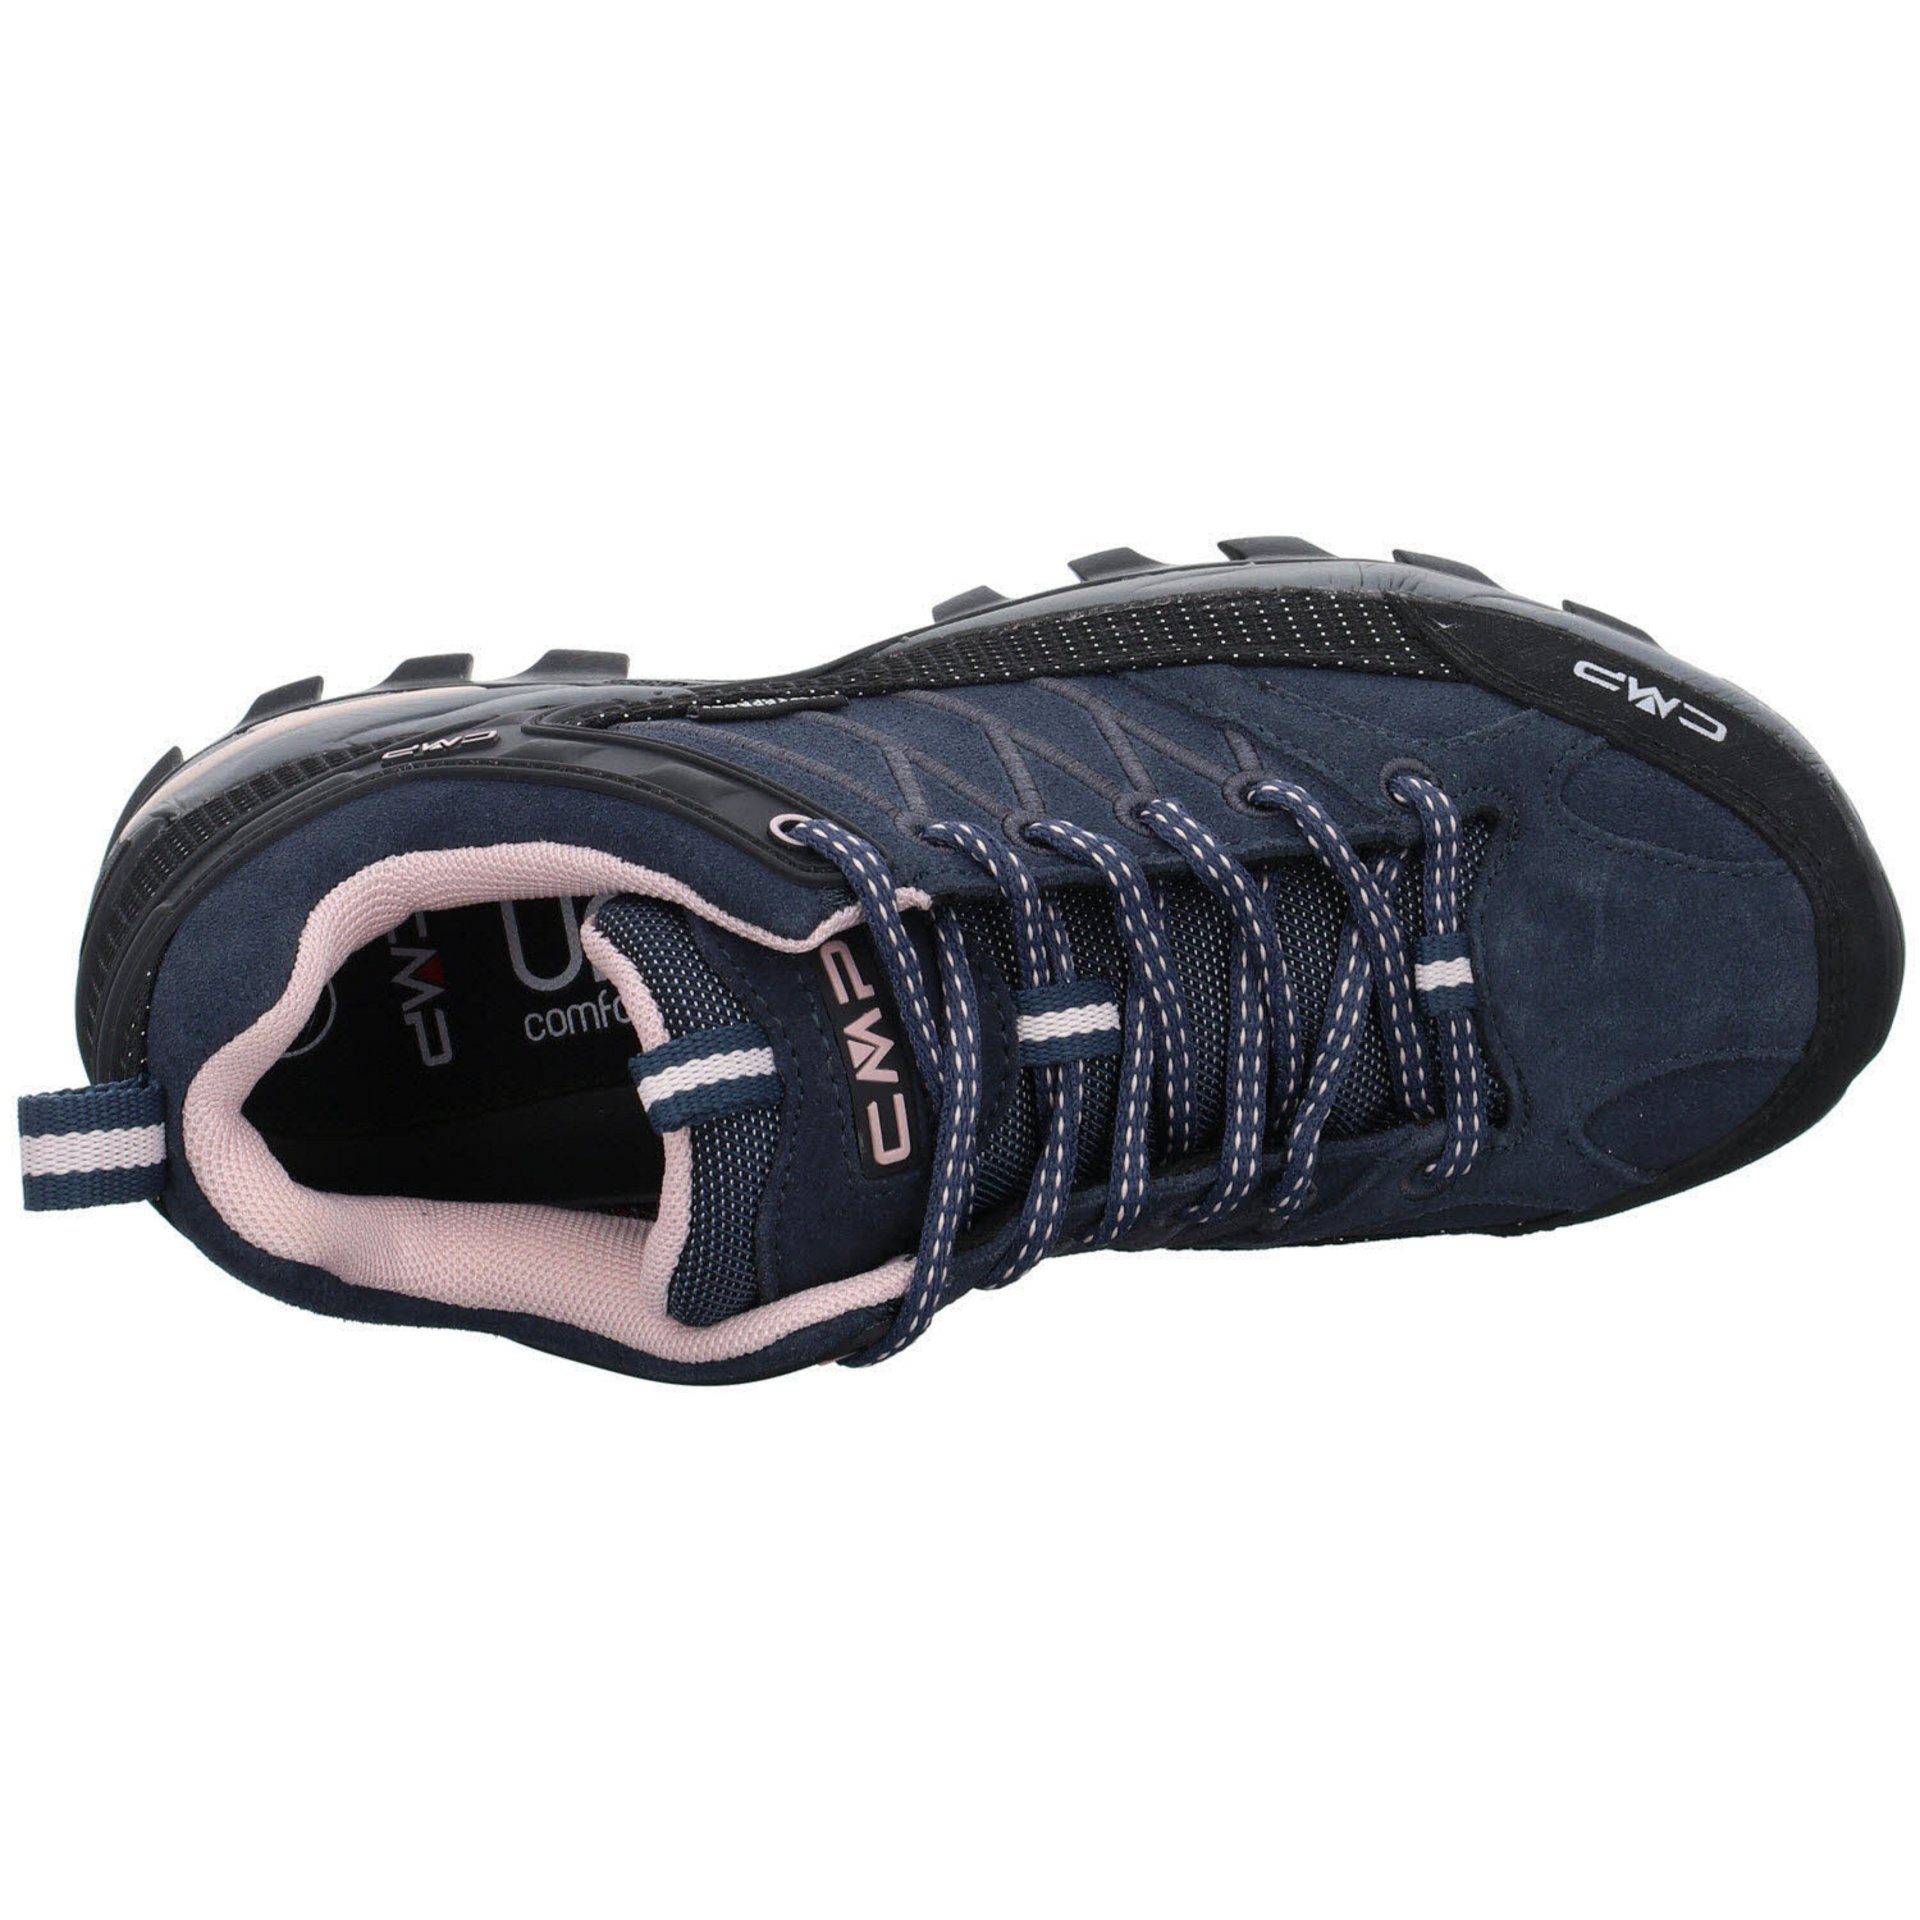 Schuhe CMP Outdoorschuh Riegel Outdoorschuh Outdoor Low Leder-/Textilkombination (201) Damen anthrazit